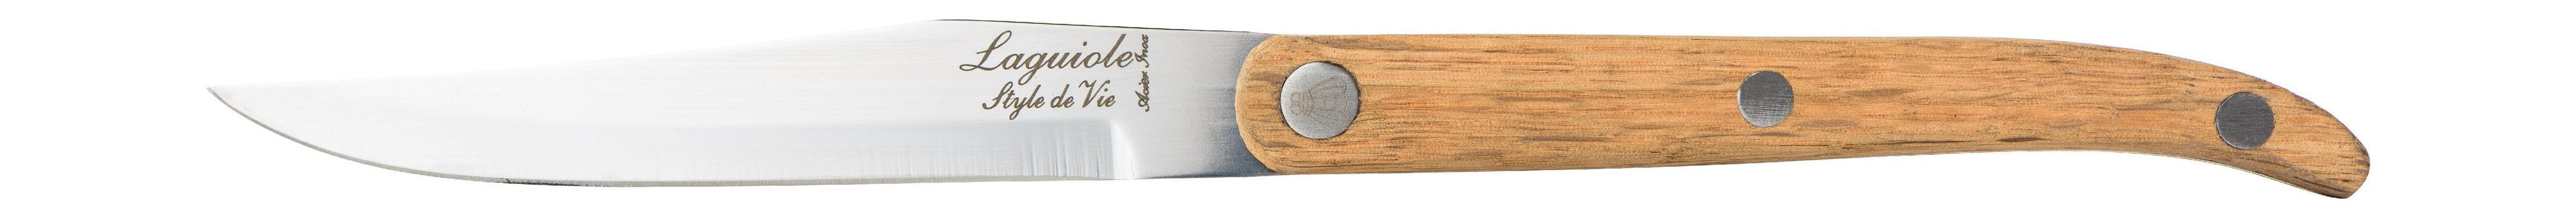 Style de Vie Authentique Laguiole Innovation Line Steak Steak Knives 6 Pieces Set Wood, Blade lisse